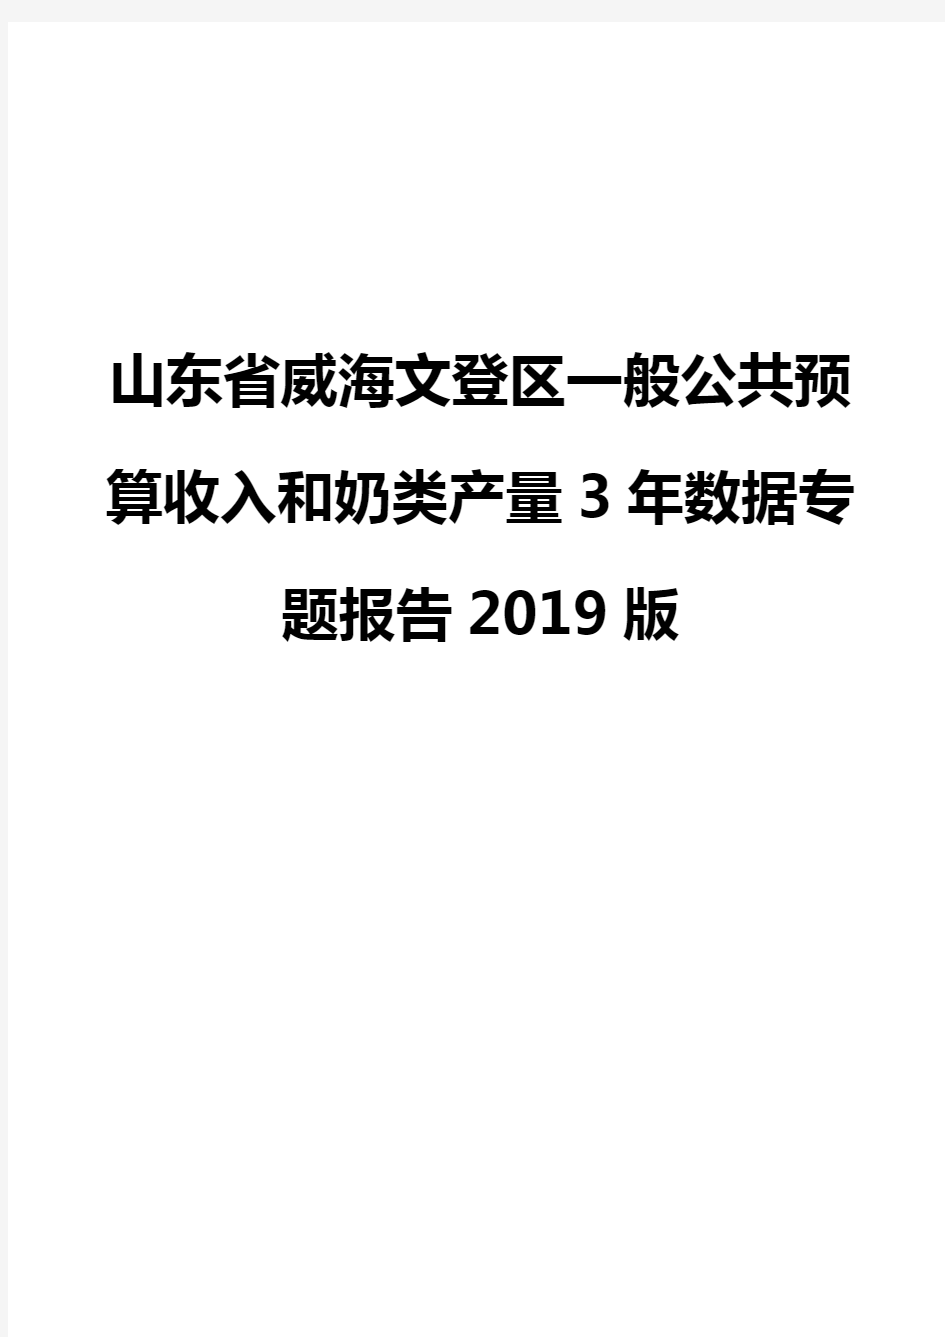 山东省威海文登区一般公共预算收入和奶类产量3年数据专题报告2019版